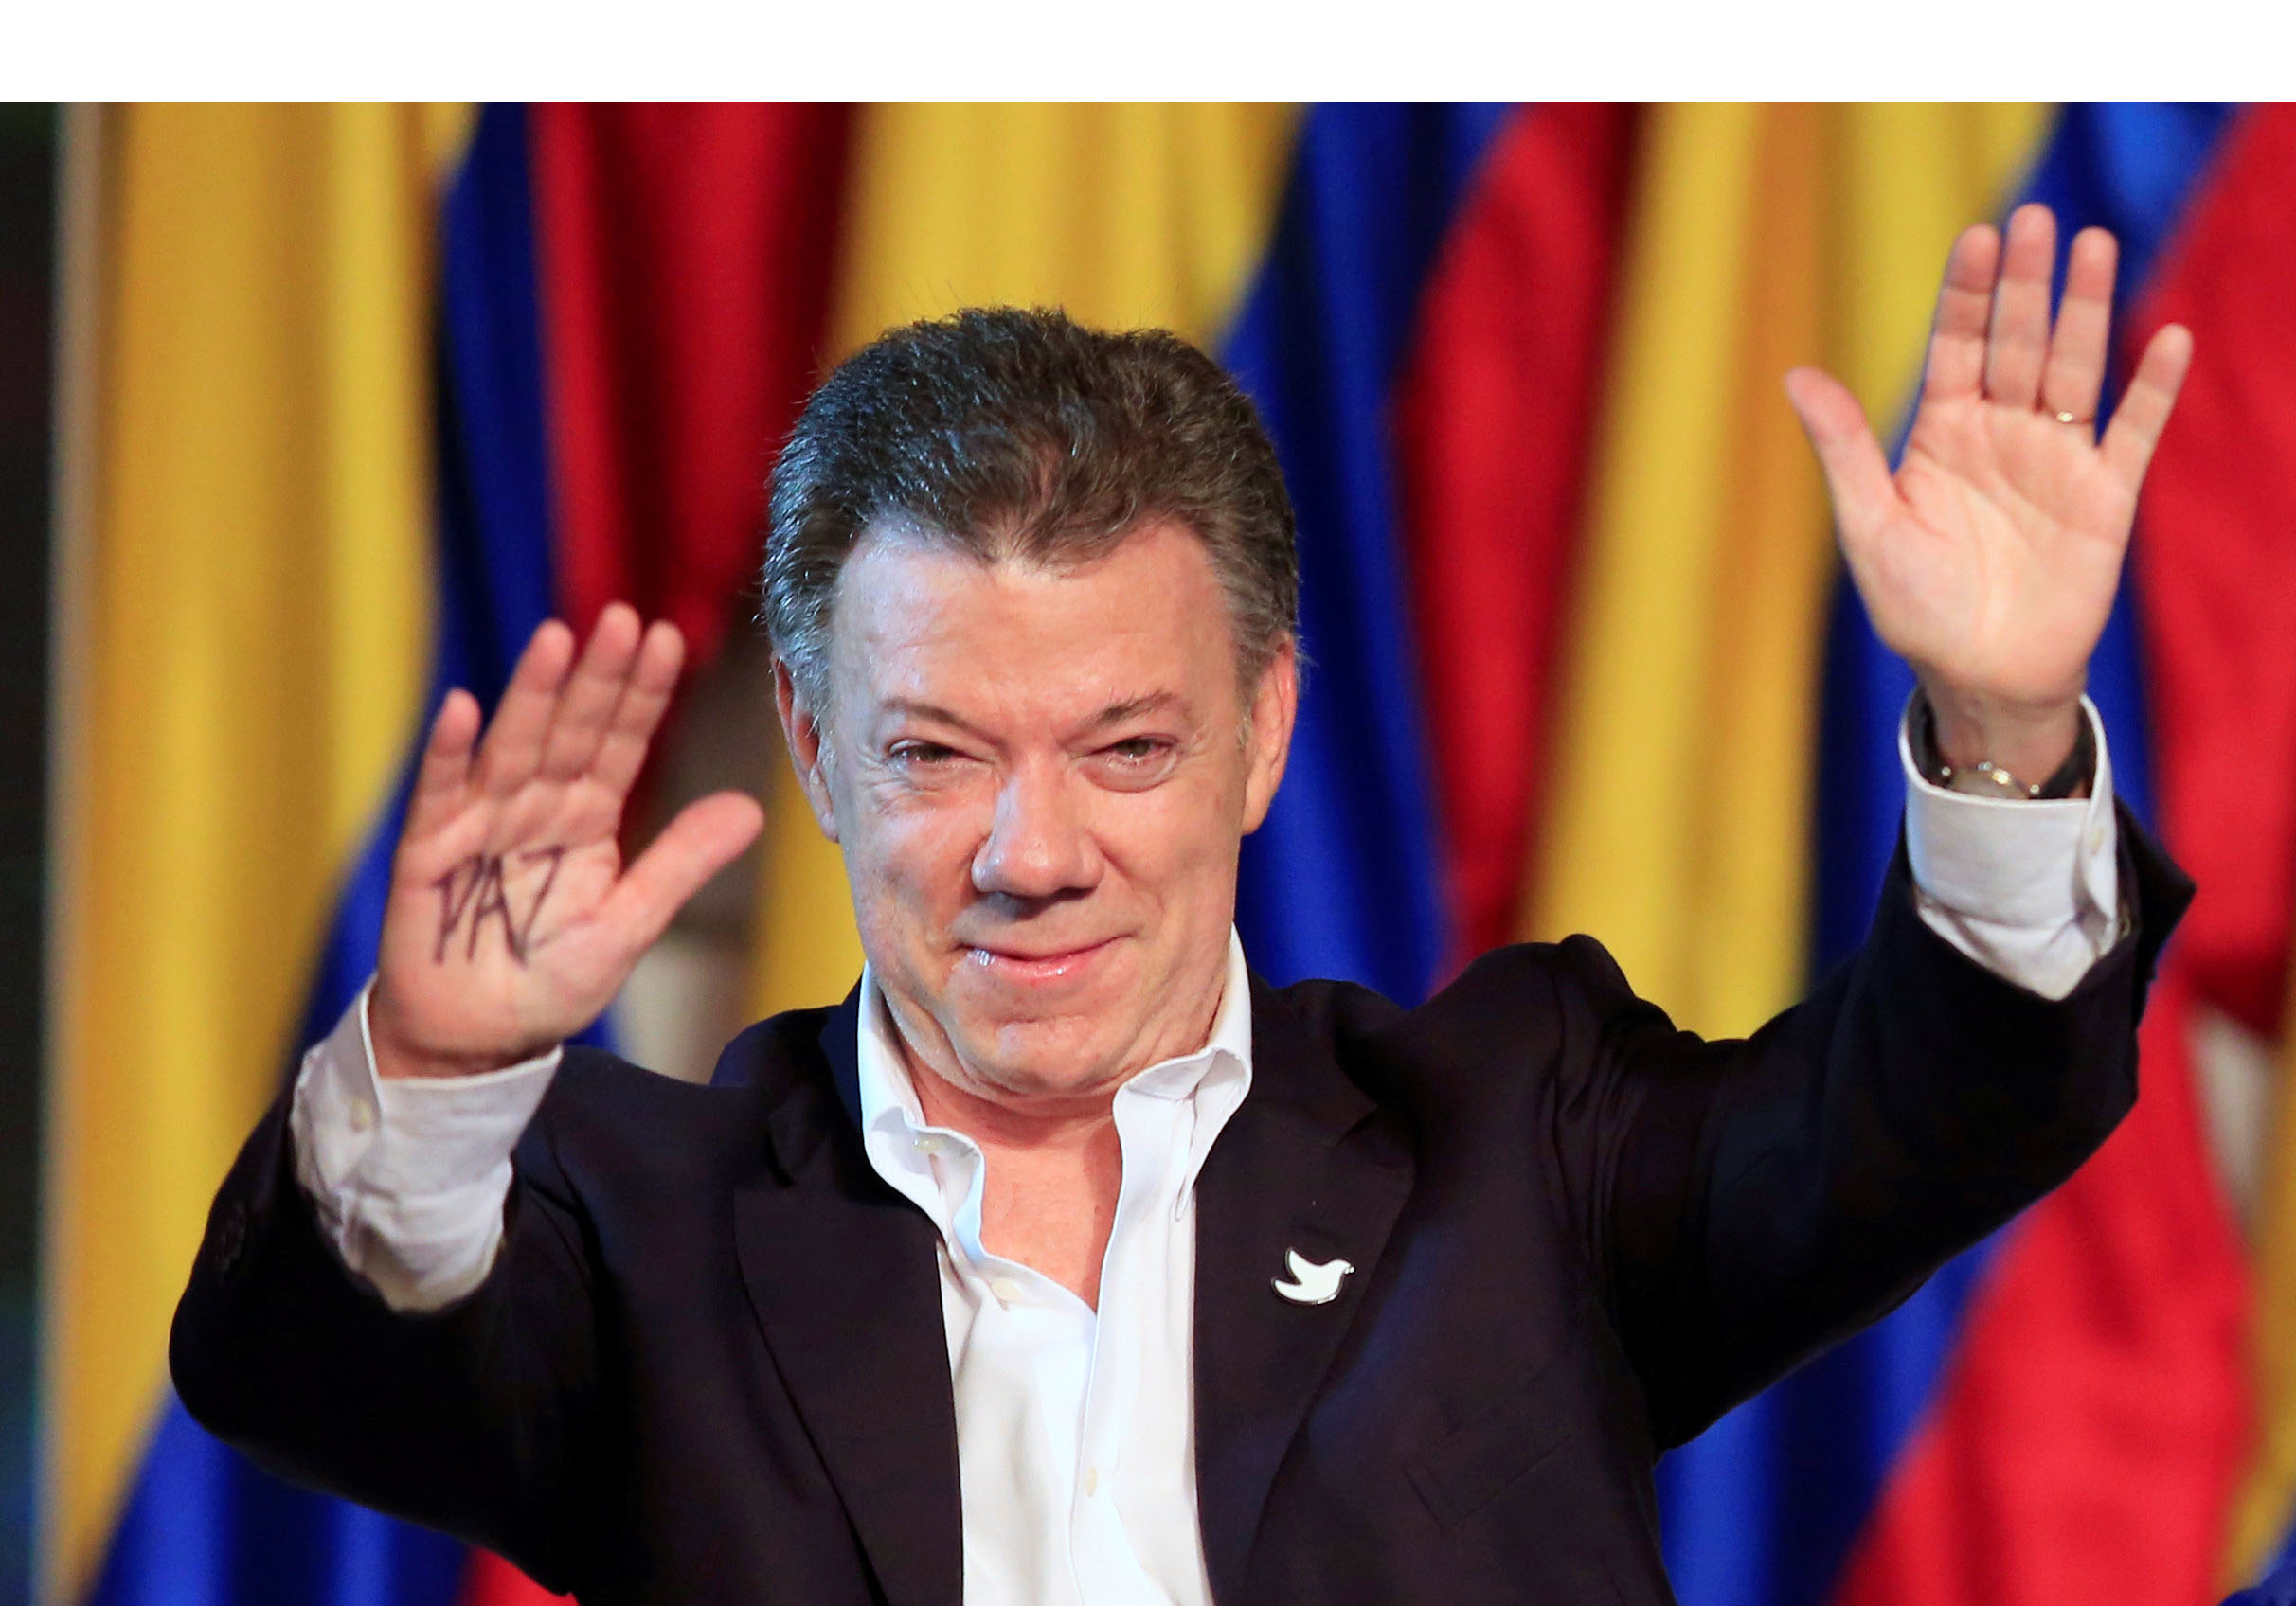 El mandatario colombiano recibió el premio otorgado por el comité noruego en honor a sus esfuerzos de paz durante 4 años con la guerrilla de las FARC